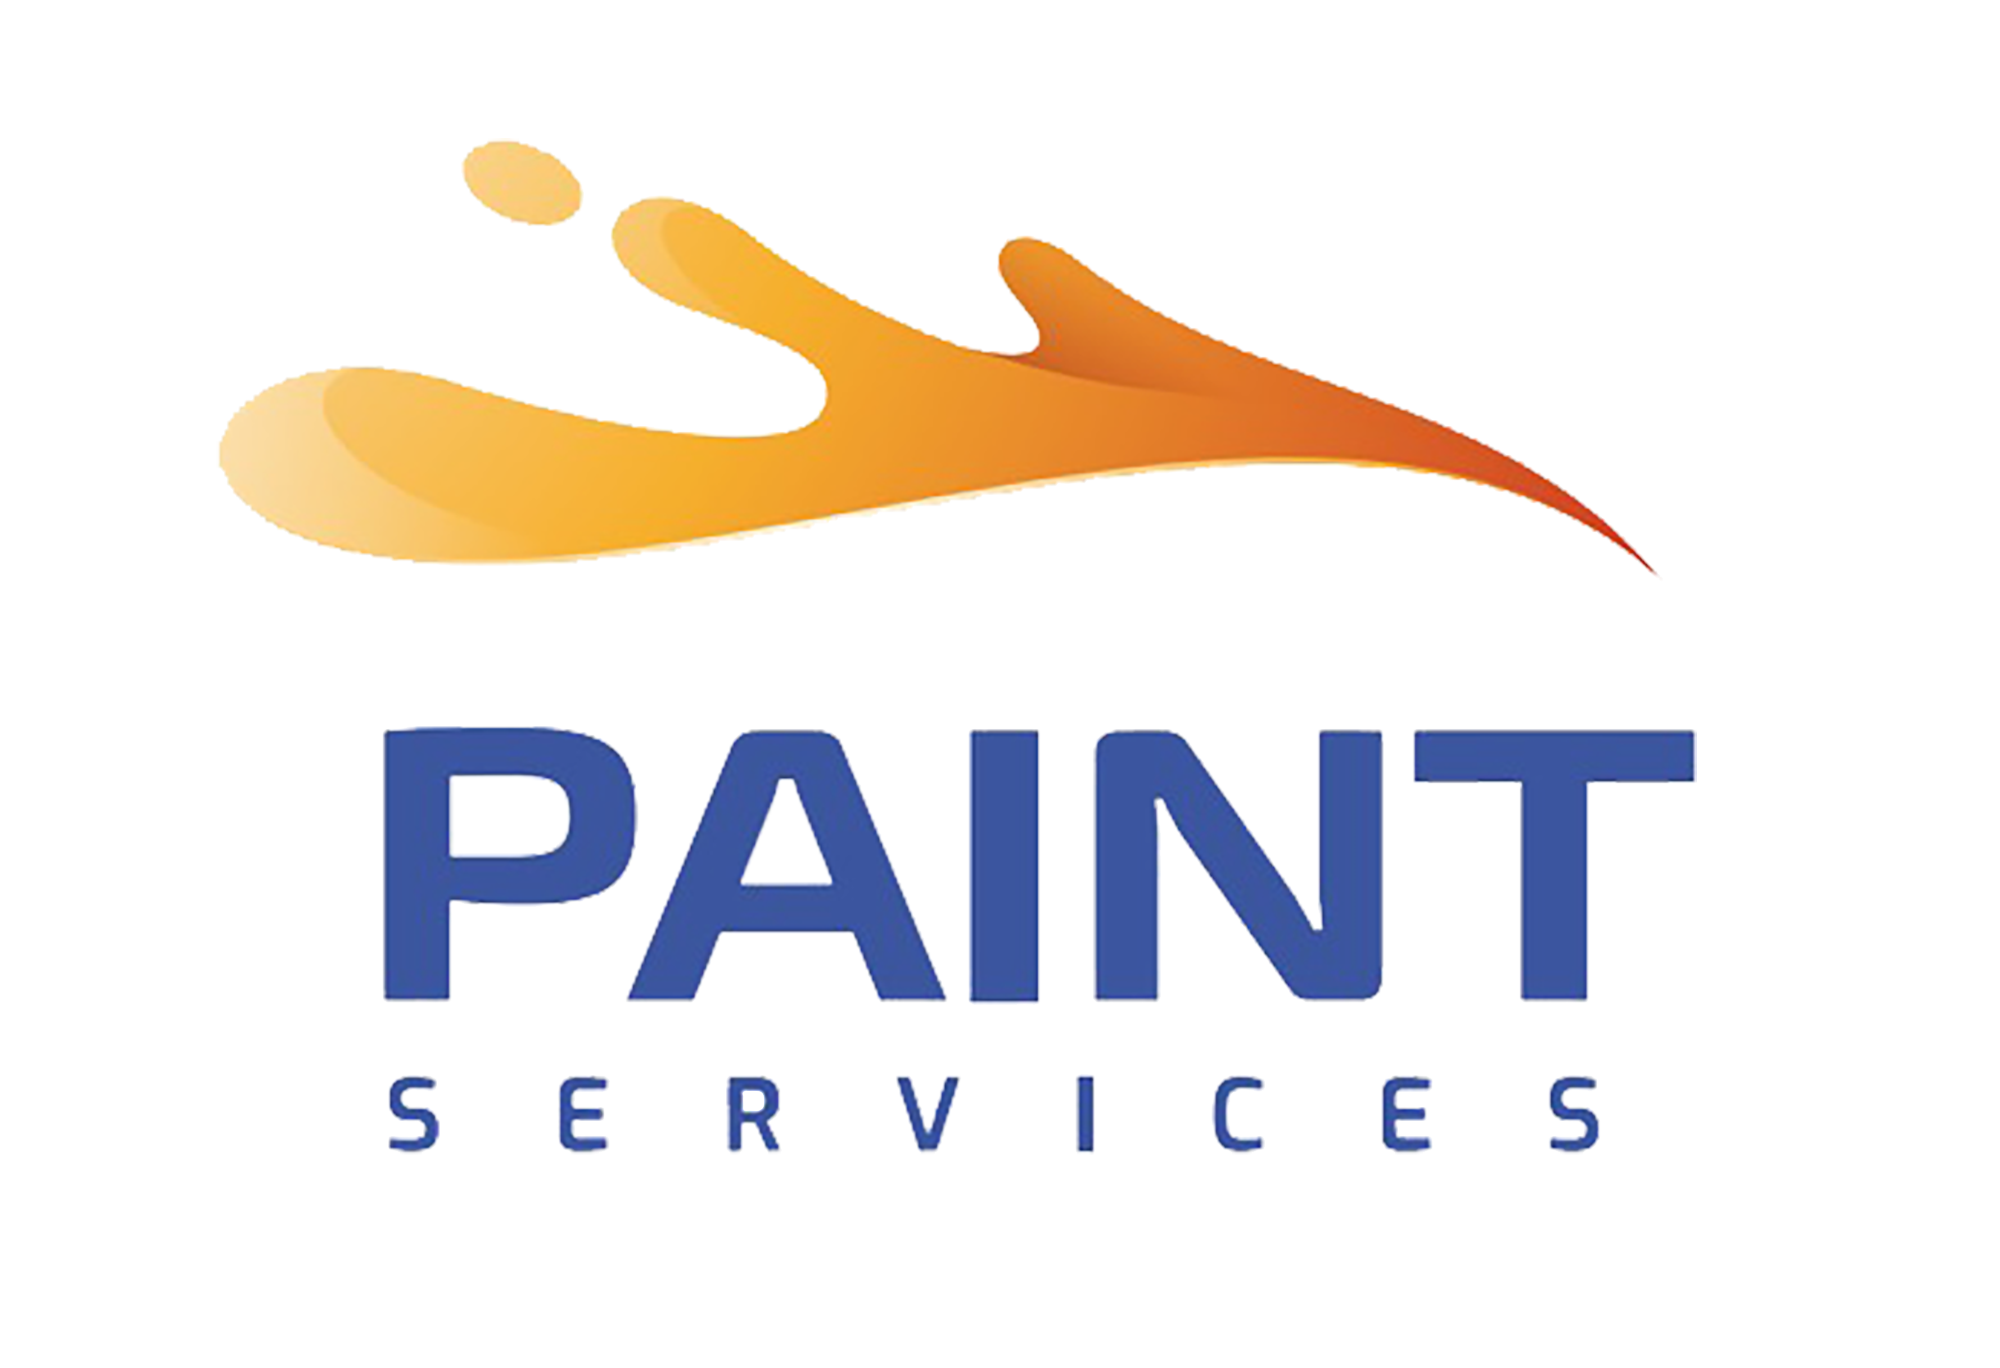 Paint Services